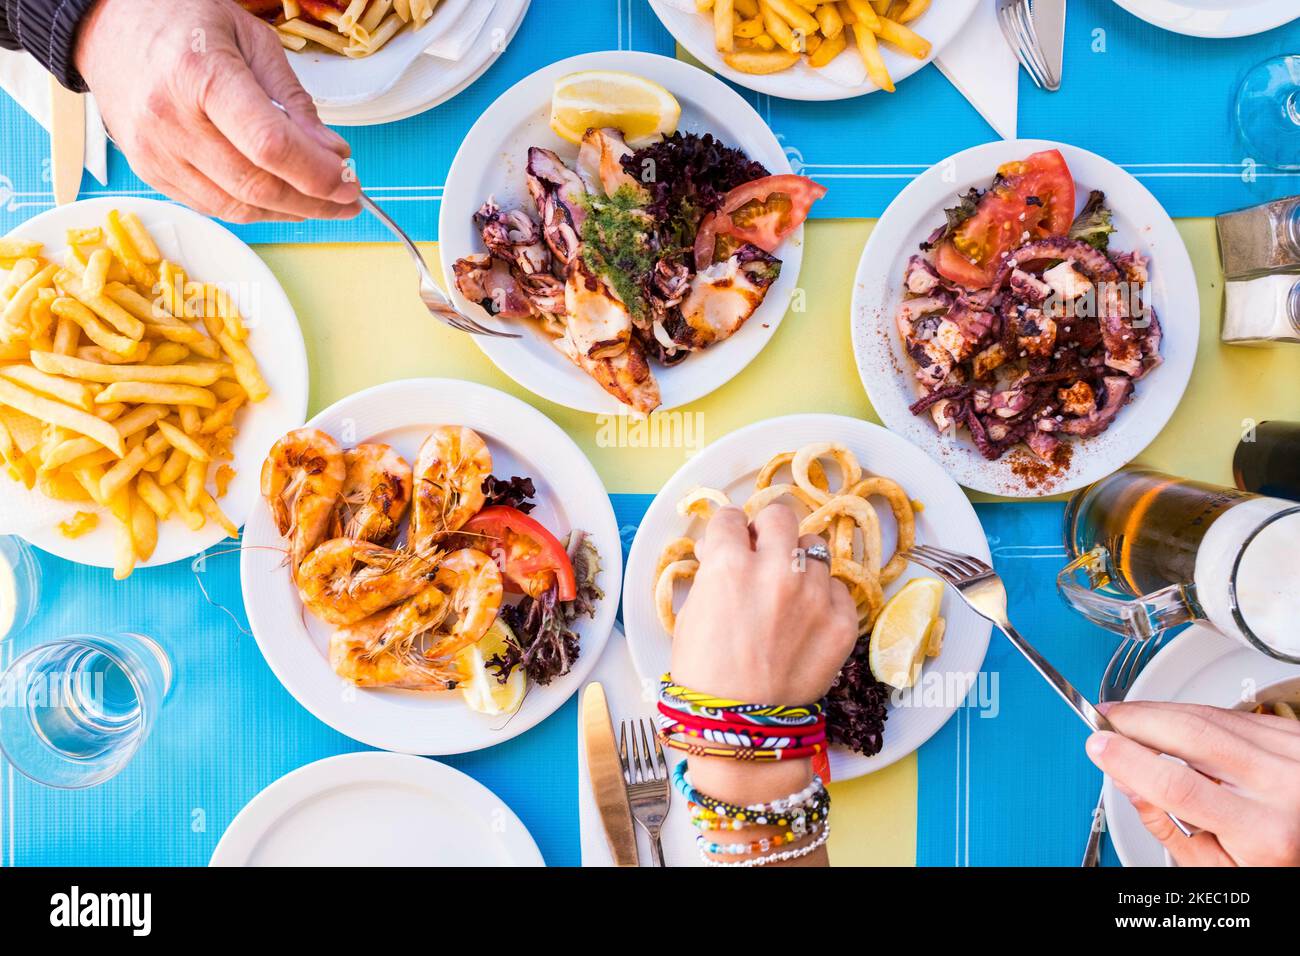 Gruppe von Menschen essen und trinken zusammen - essen Fisch Und gesunde Ernährung - Tisch mit Teller mit Lebensmitteln Stockfoto